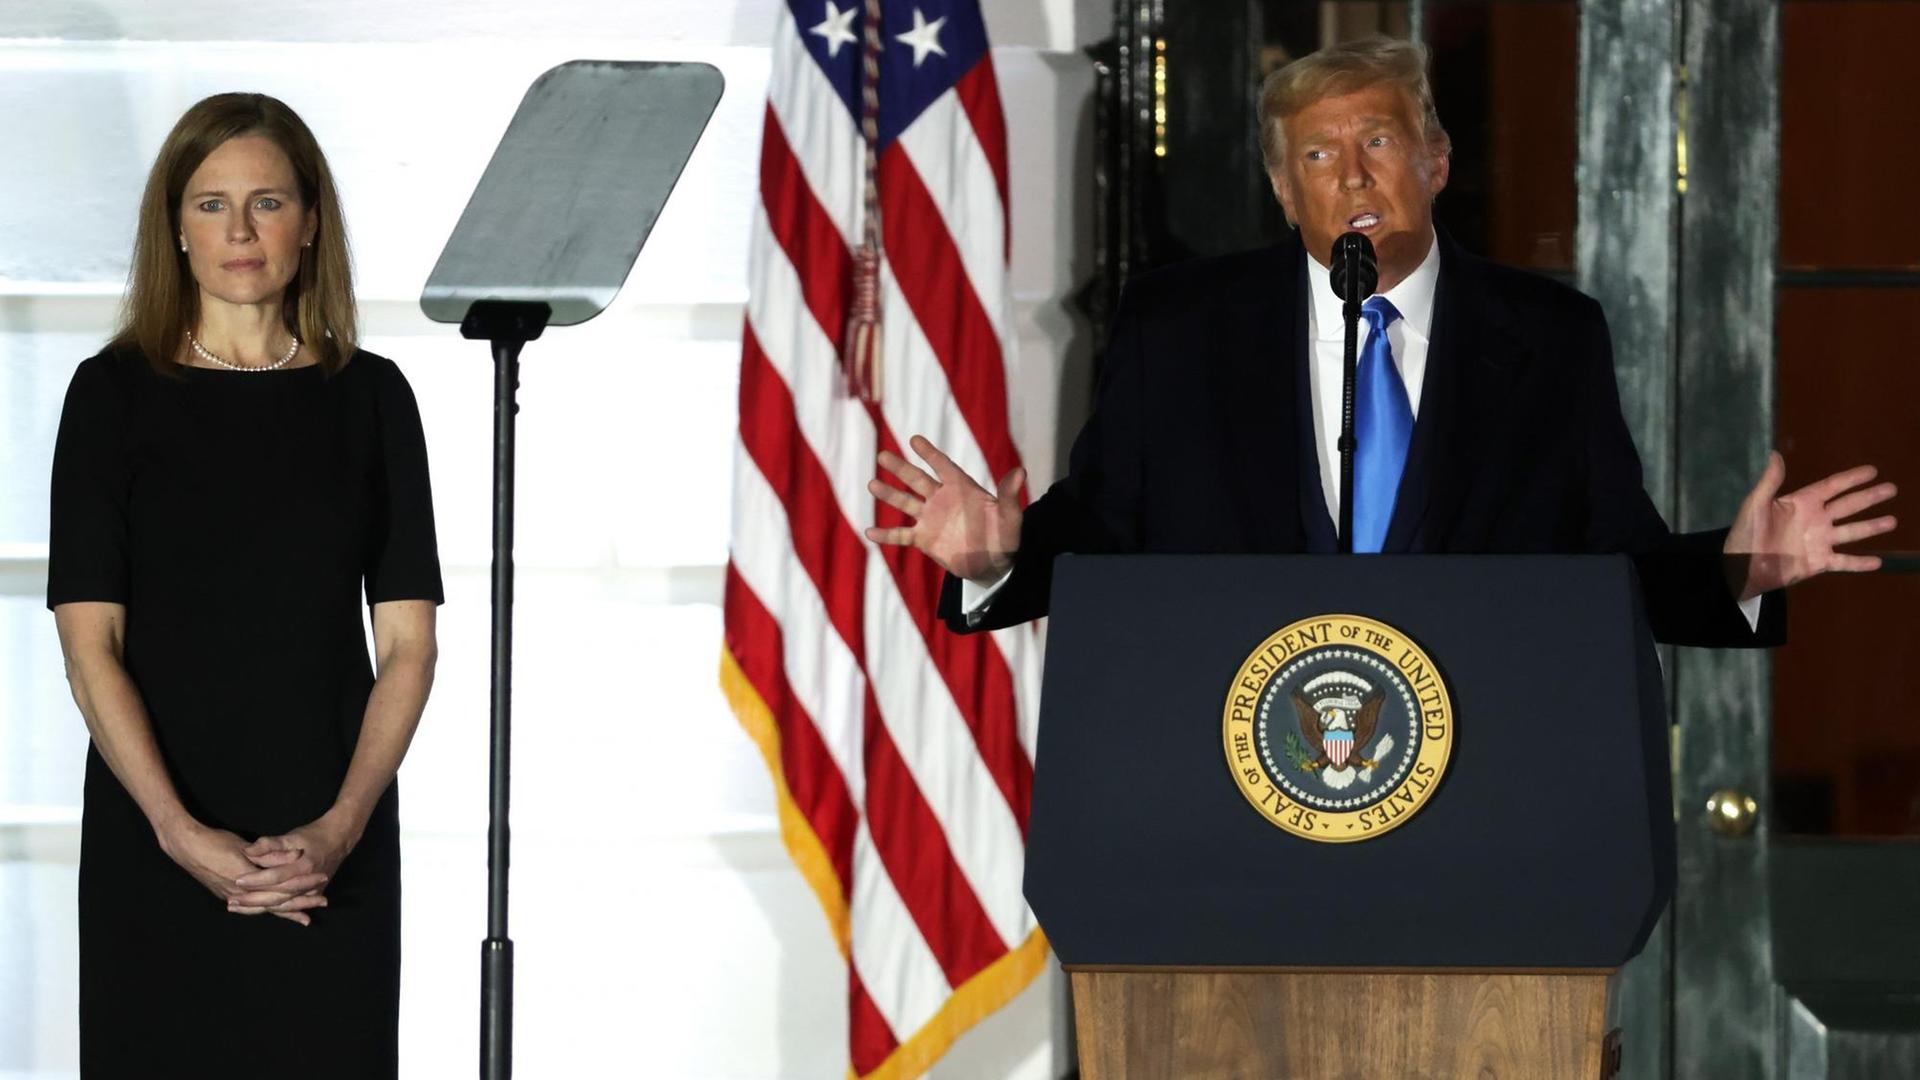 US-Präsident Donald Trump spricht, während Amy Coney Barrett, Associate Justice am Obersten Gerichtshof der USA, während einer feierlichen Vereidigung auf dem South Lawn des Weißen Hauses am 26. Oktober 2020 in Washington, DC, zuhört.